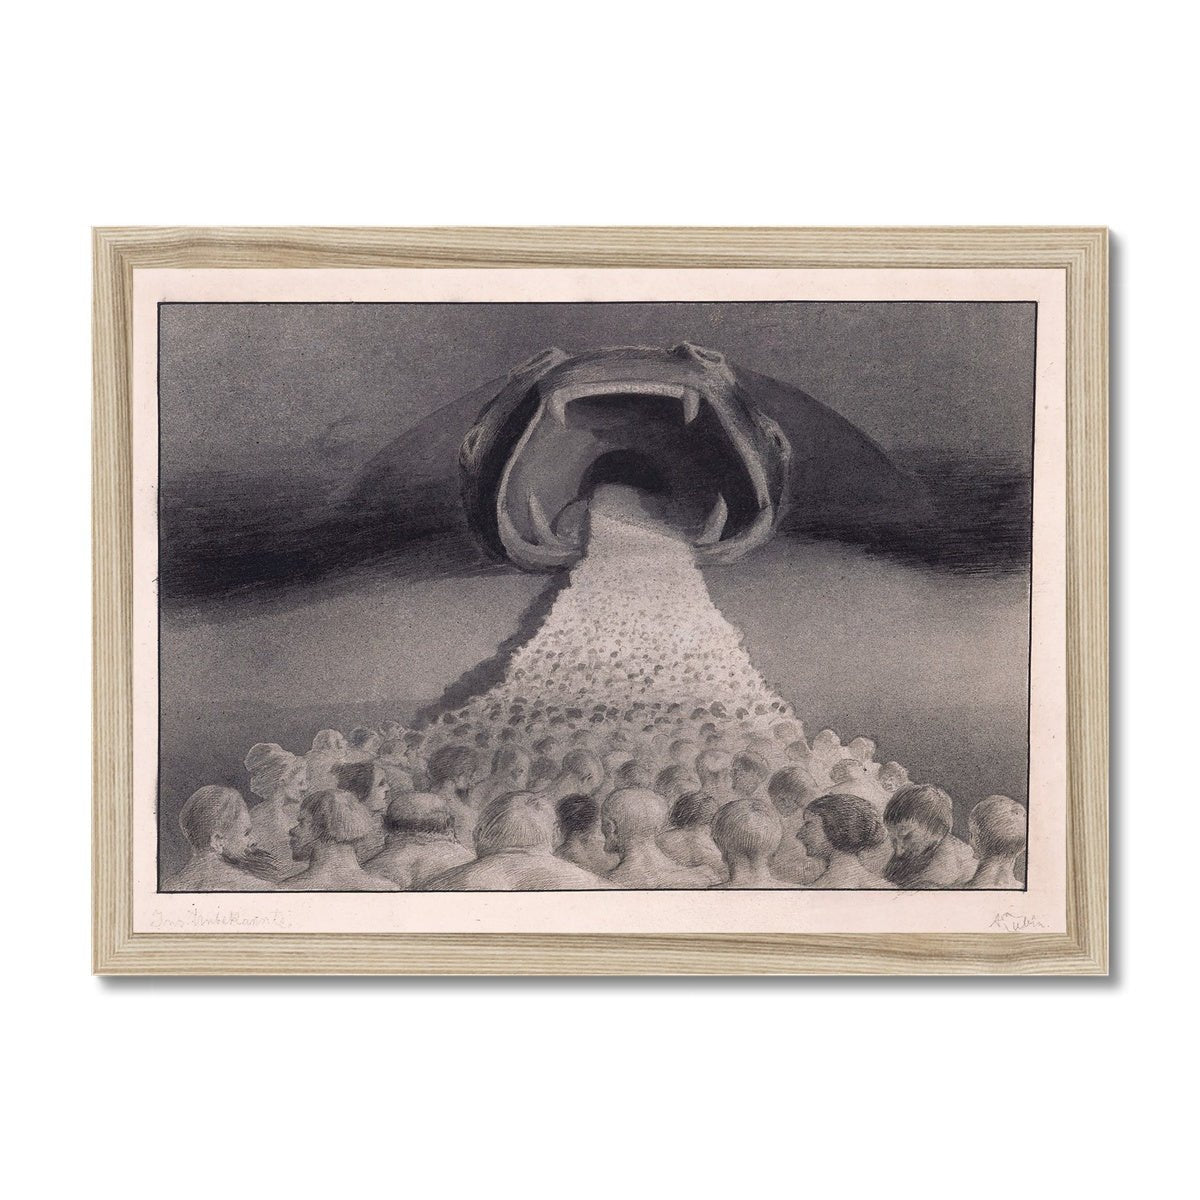 Framed Print A4 Landscape / Natural Frame Framed Alfred Kubin - Into The Unknown Symbolist Surreal Wall Art Antique Gothic Supernatural Decor Dark Occult Framed Art Print